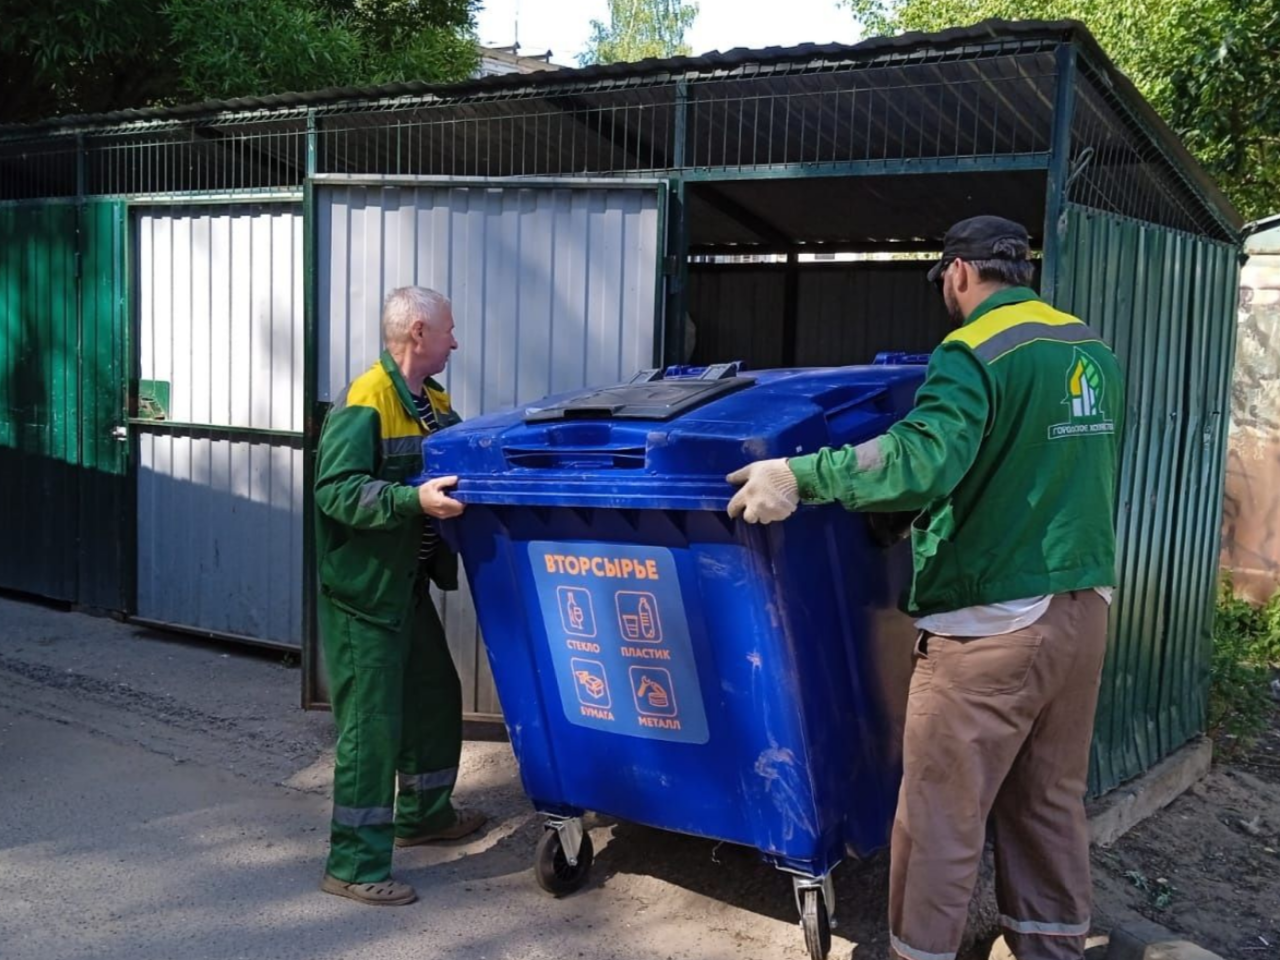 Администрация просит новгородцев не складировать в контейнеры синего цвета отходы, не относящиеся к сортировке и переработке.